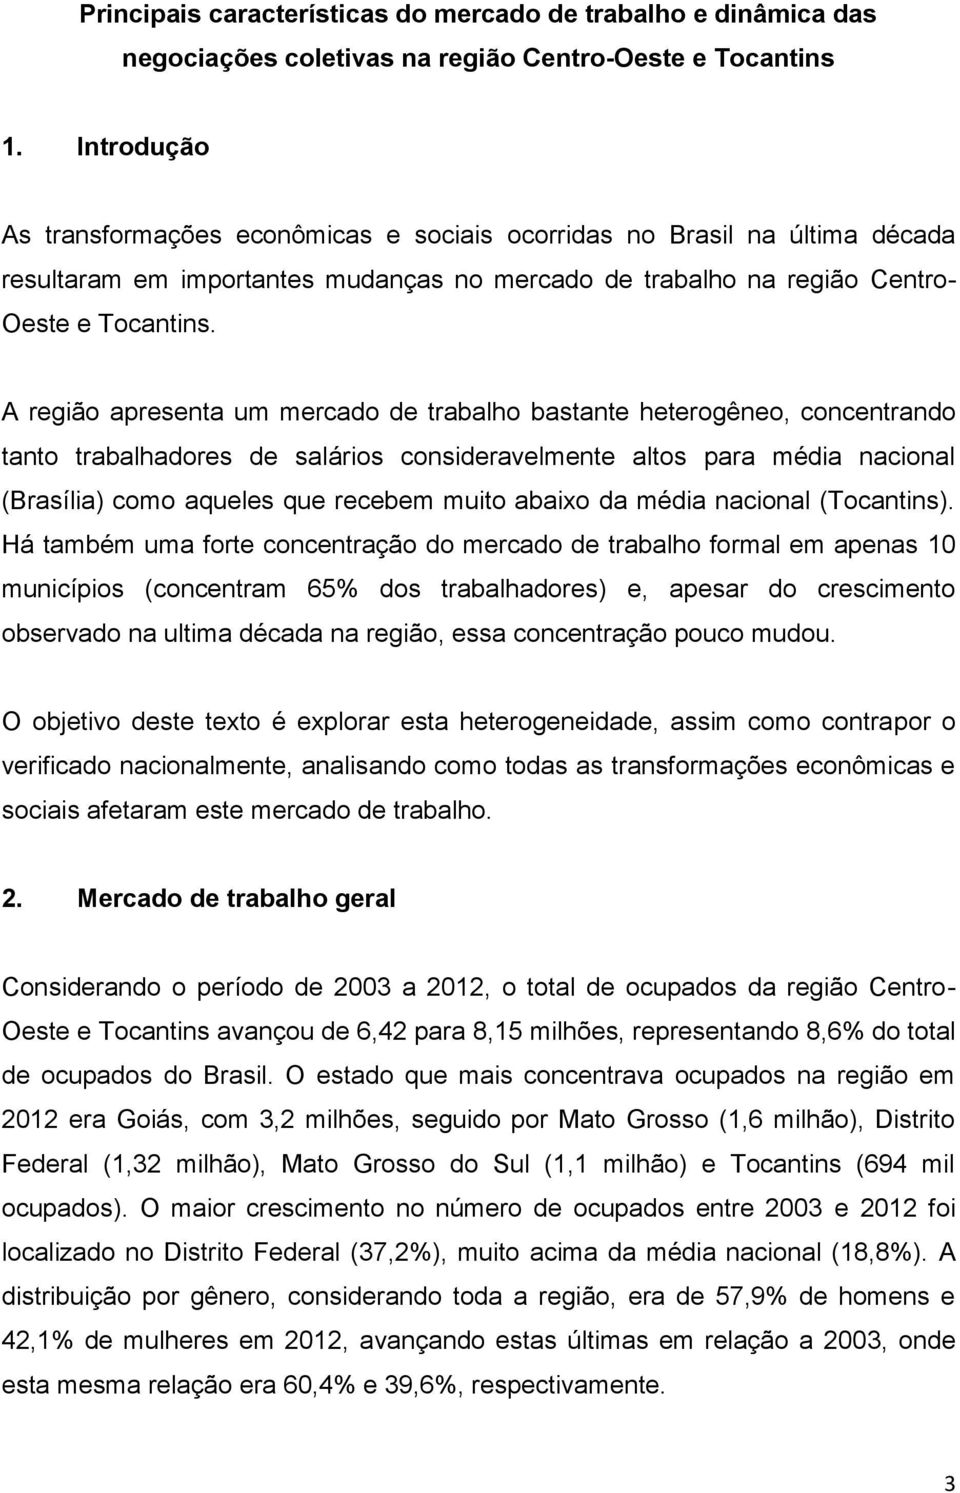 A região apresenta um mercado de trabalho bastante heterogêneo, concentrando tanto trabalhadores de salários consideravelmente altos para média nacional (Brasília) como aqueles que recebem muito